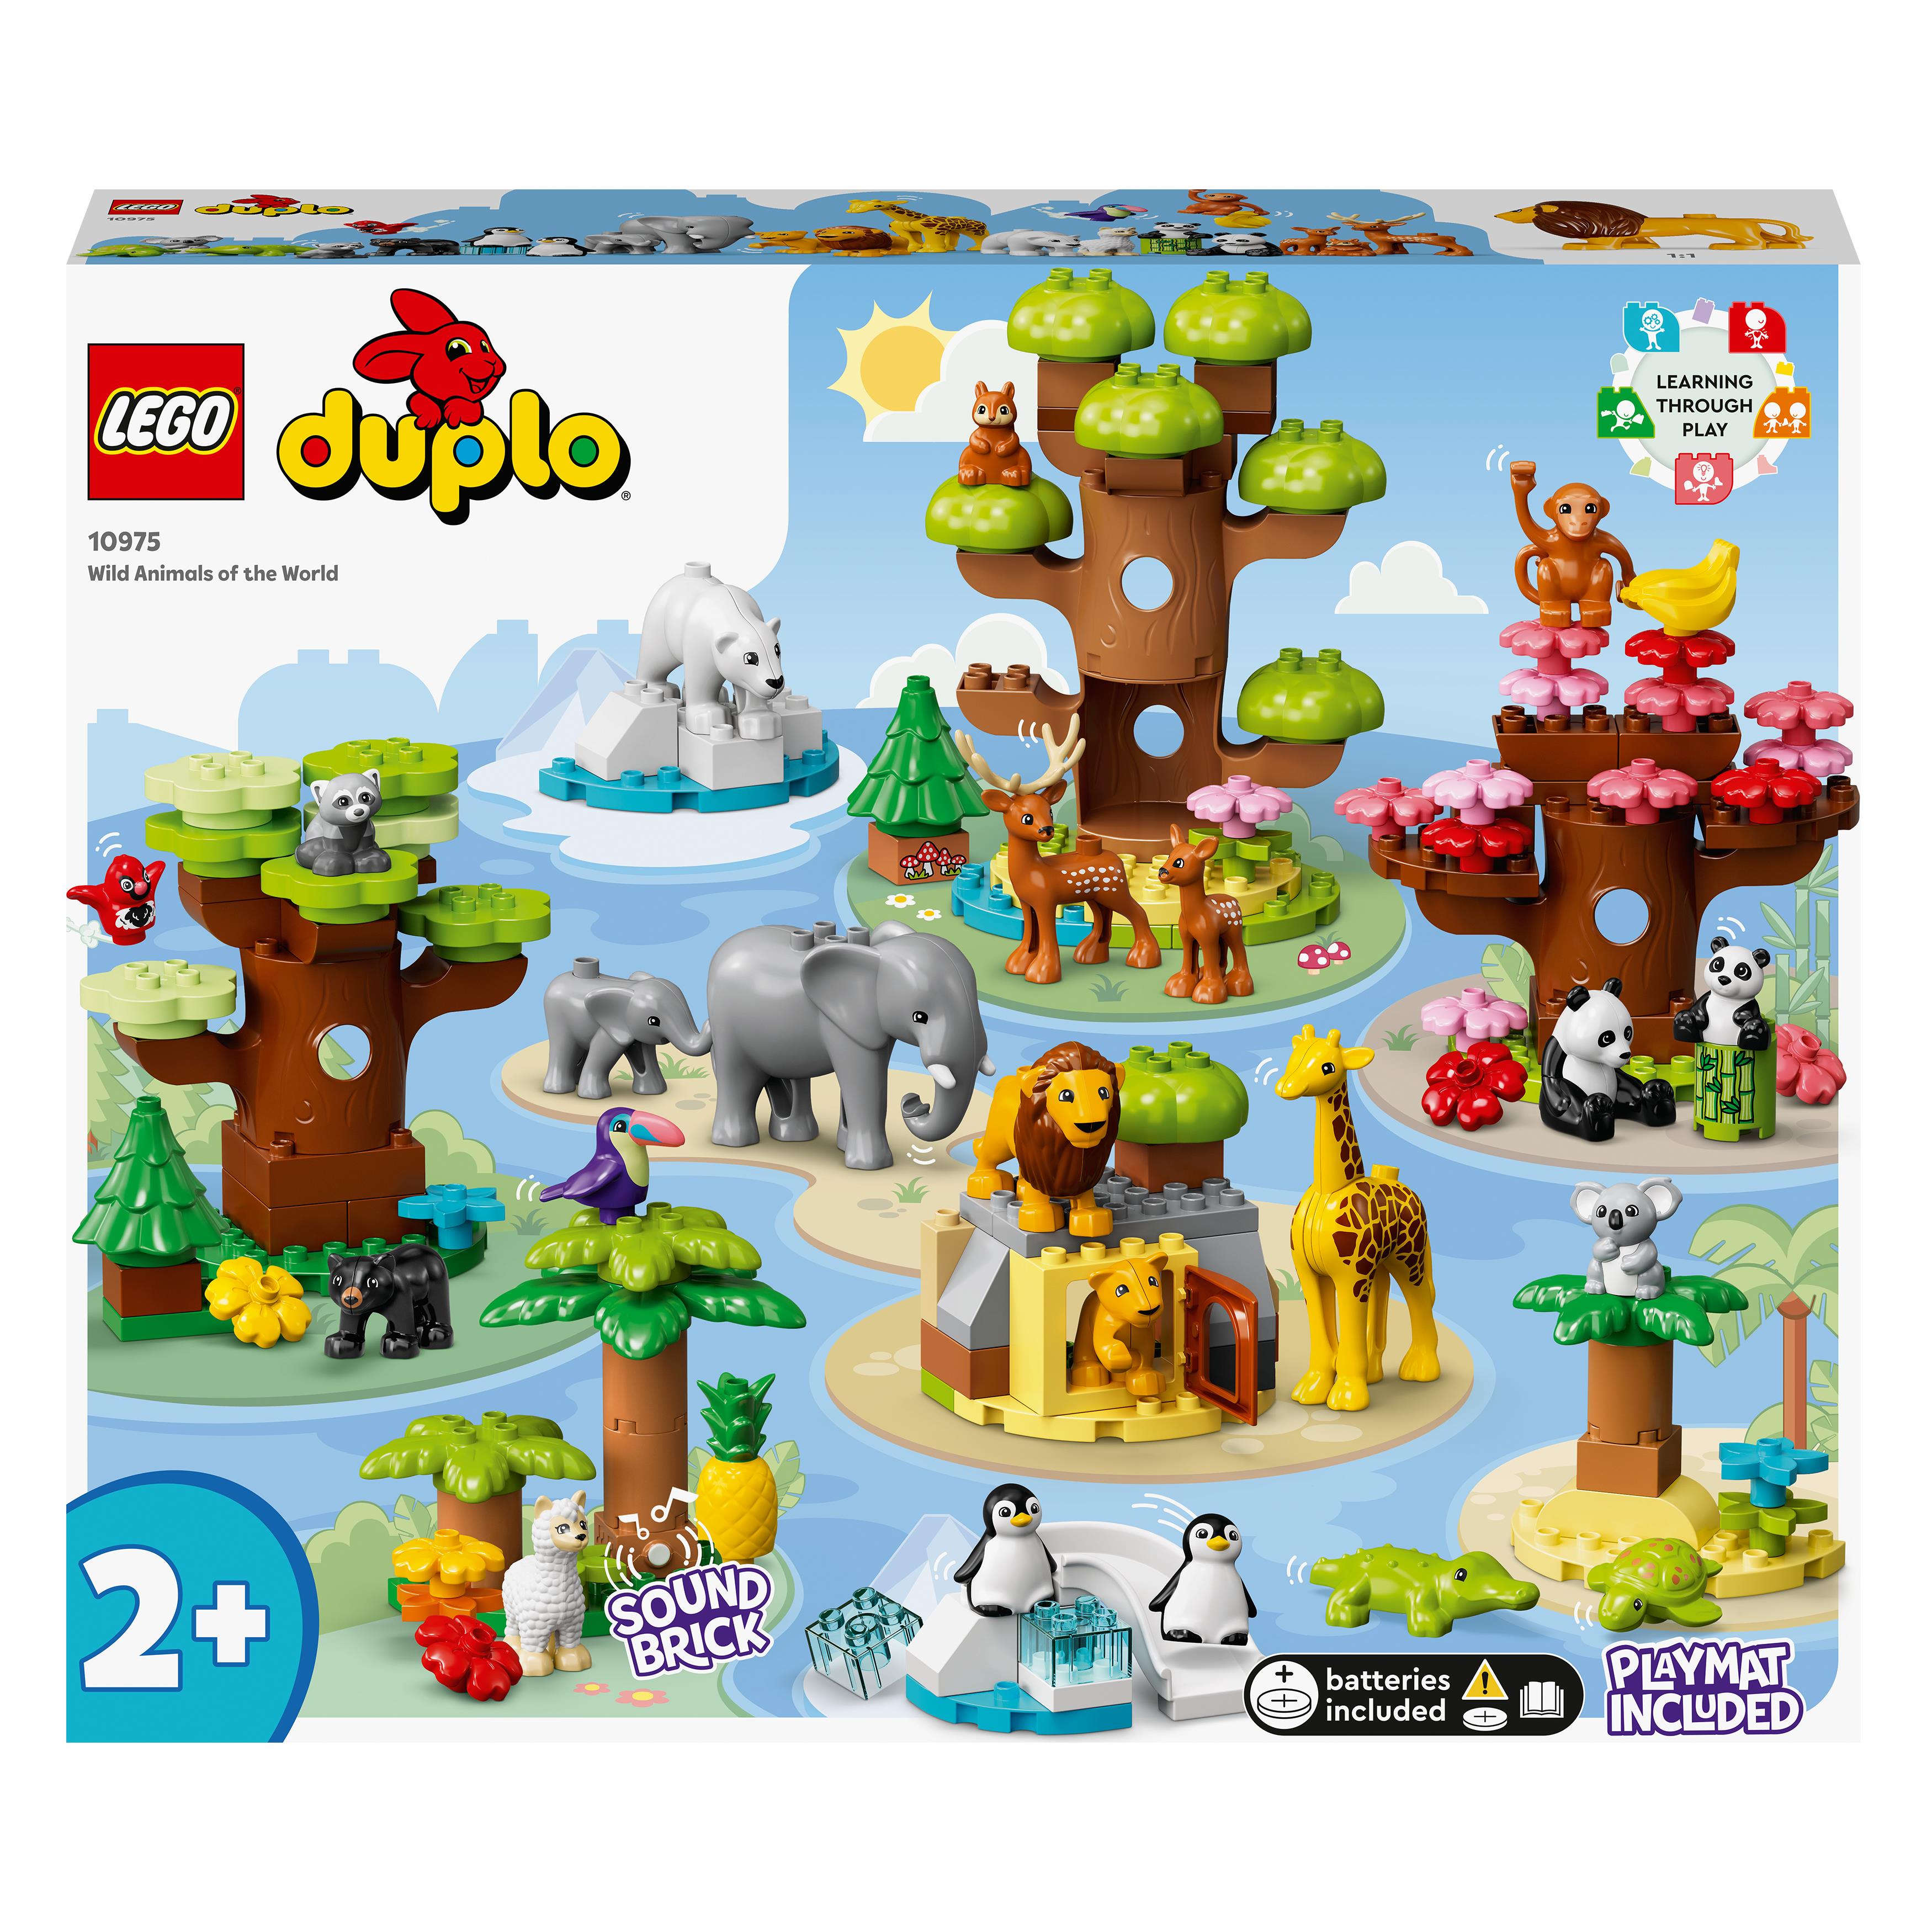 LEGO DUPLO 10971 Animali dell'Africa, Giochi Educativi per Bambini